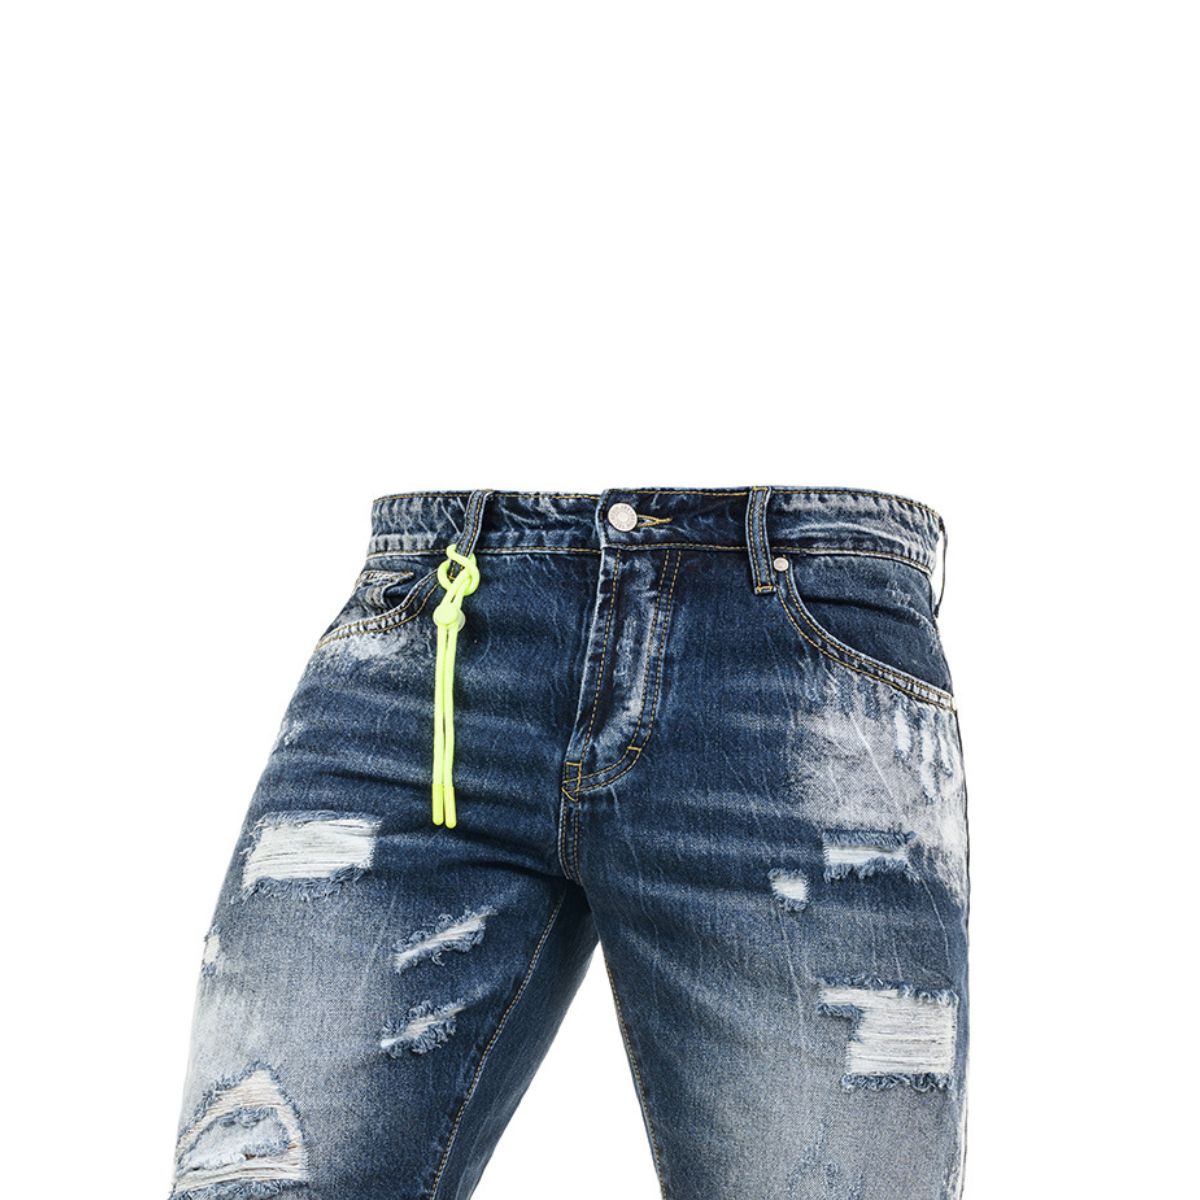 Ανδρική Βερμούδα Jeans με Σκισίματα (3287) - BLUE - Panda Clothing